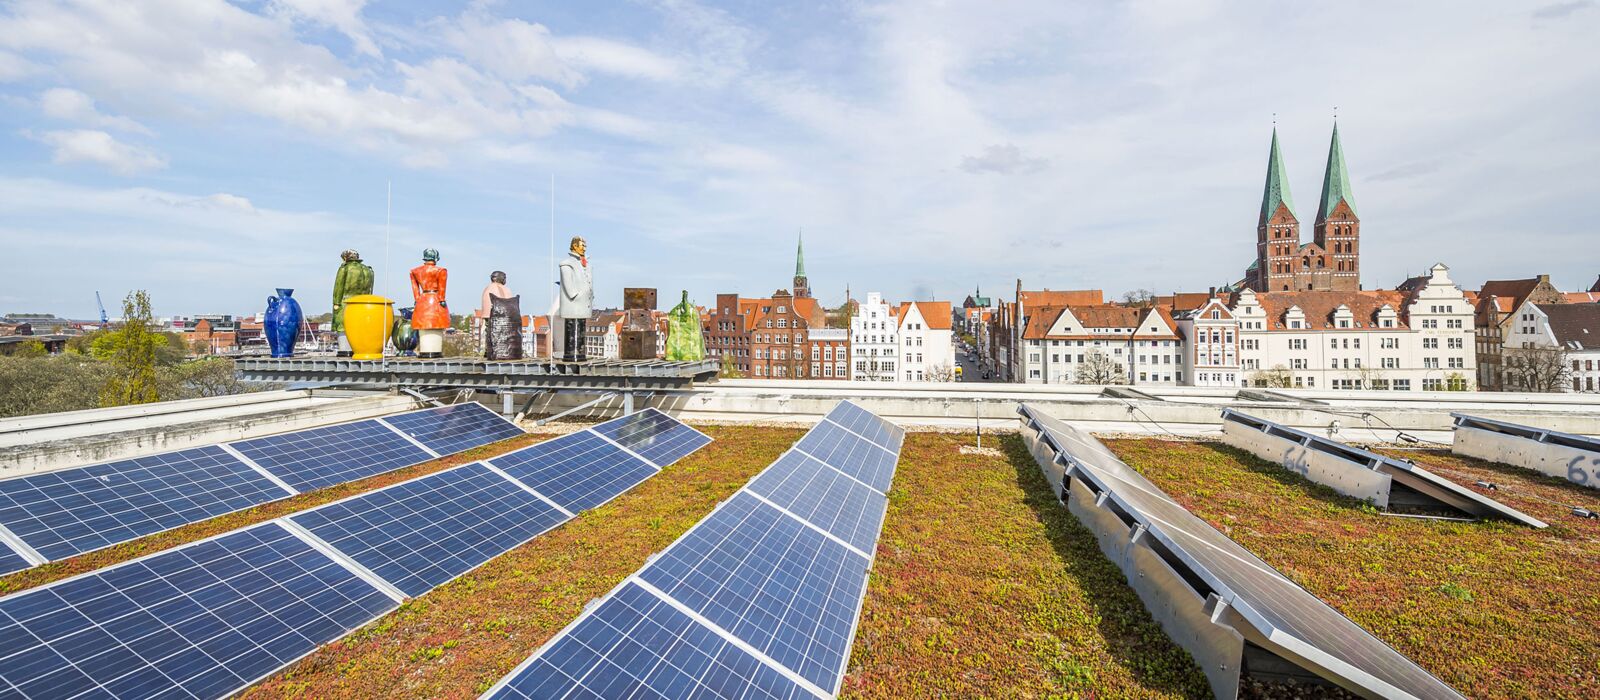 Solarpanels auf dem Dach der Musik- und Kongresshalle Lübeck